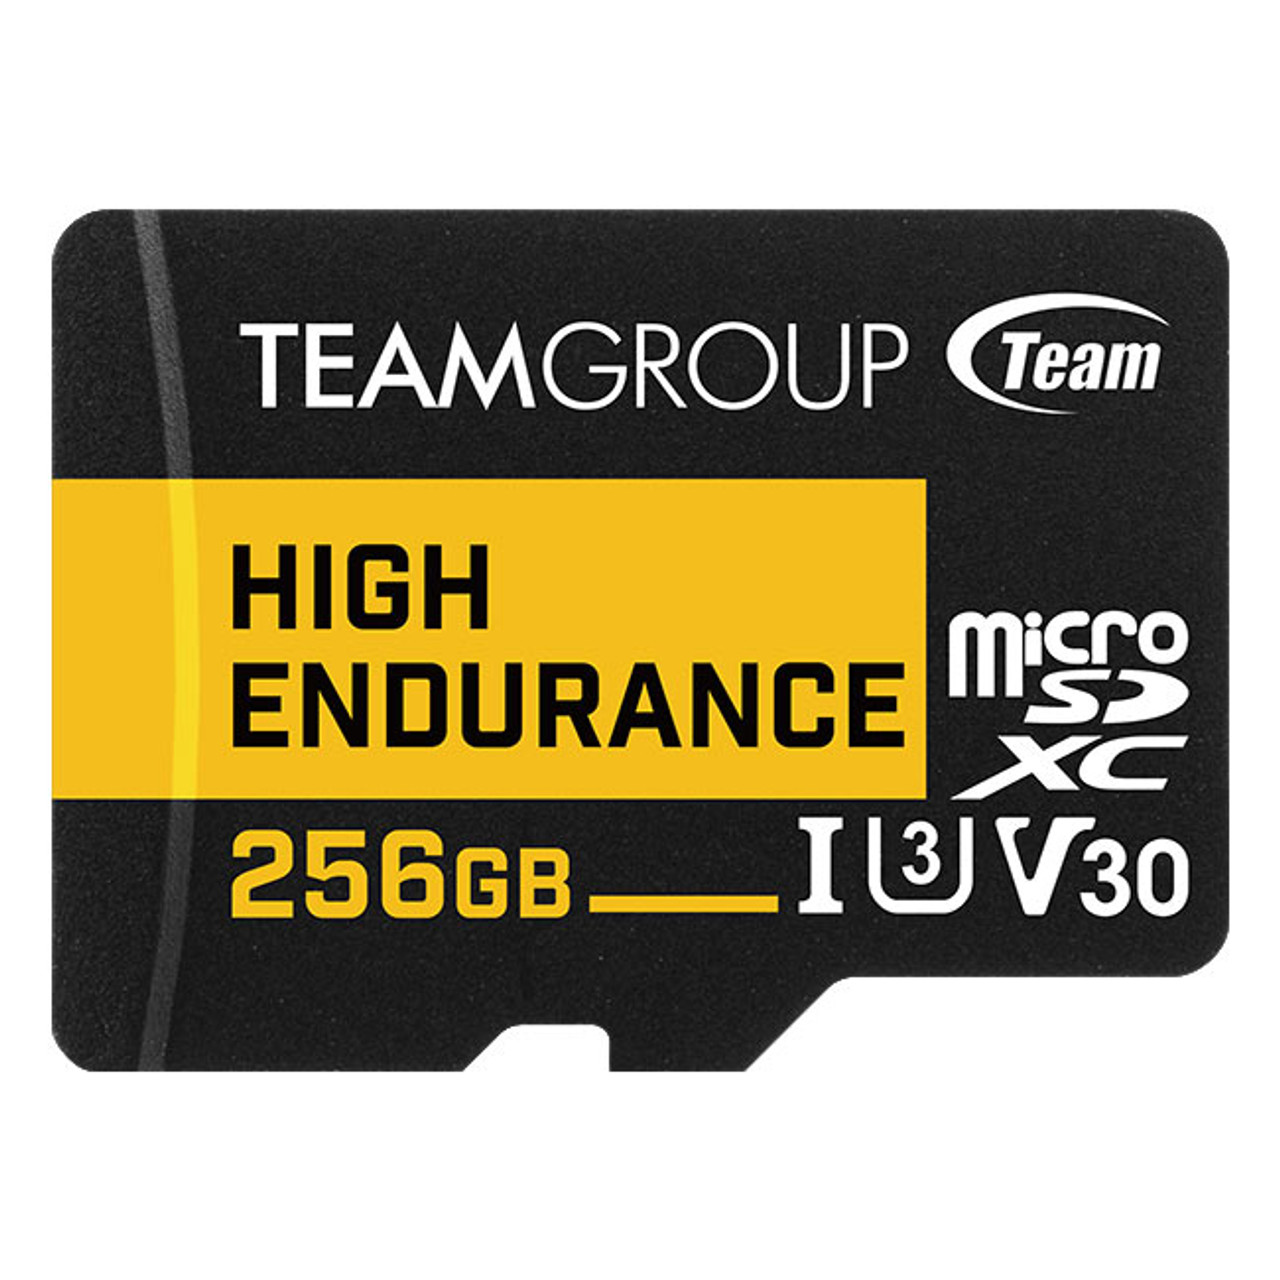 THUSDX256GIV3002 | Team Group | High Endurance memory card 256 GB MicroSDXC Class 3